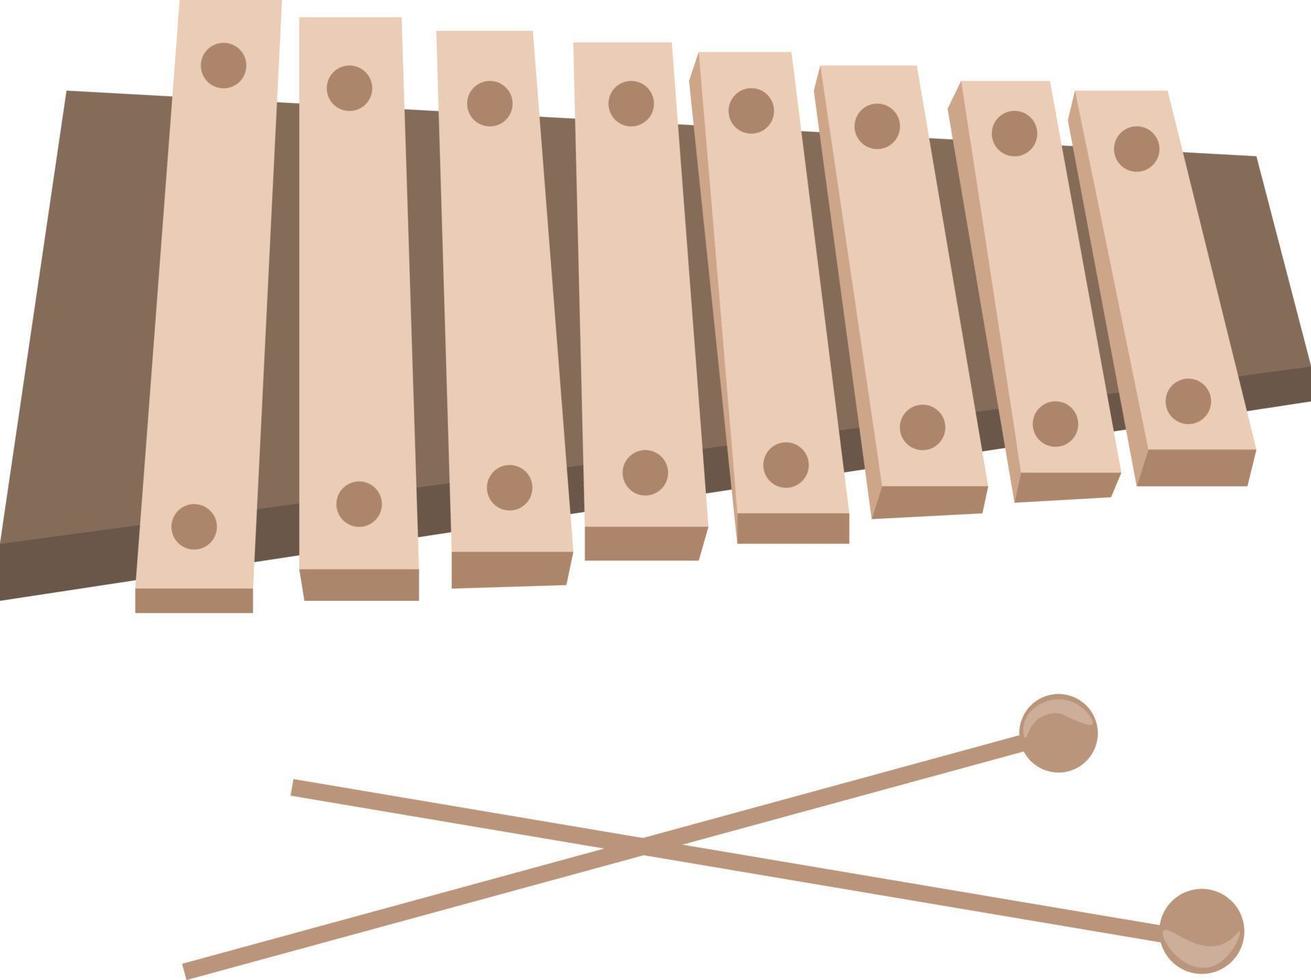 instrument xylophone, illustration, vecteur sur fond blanc.